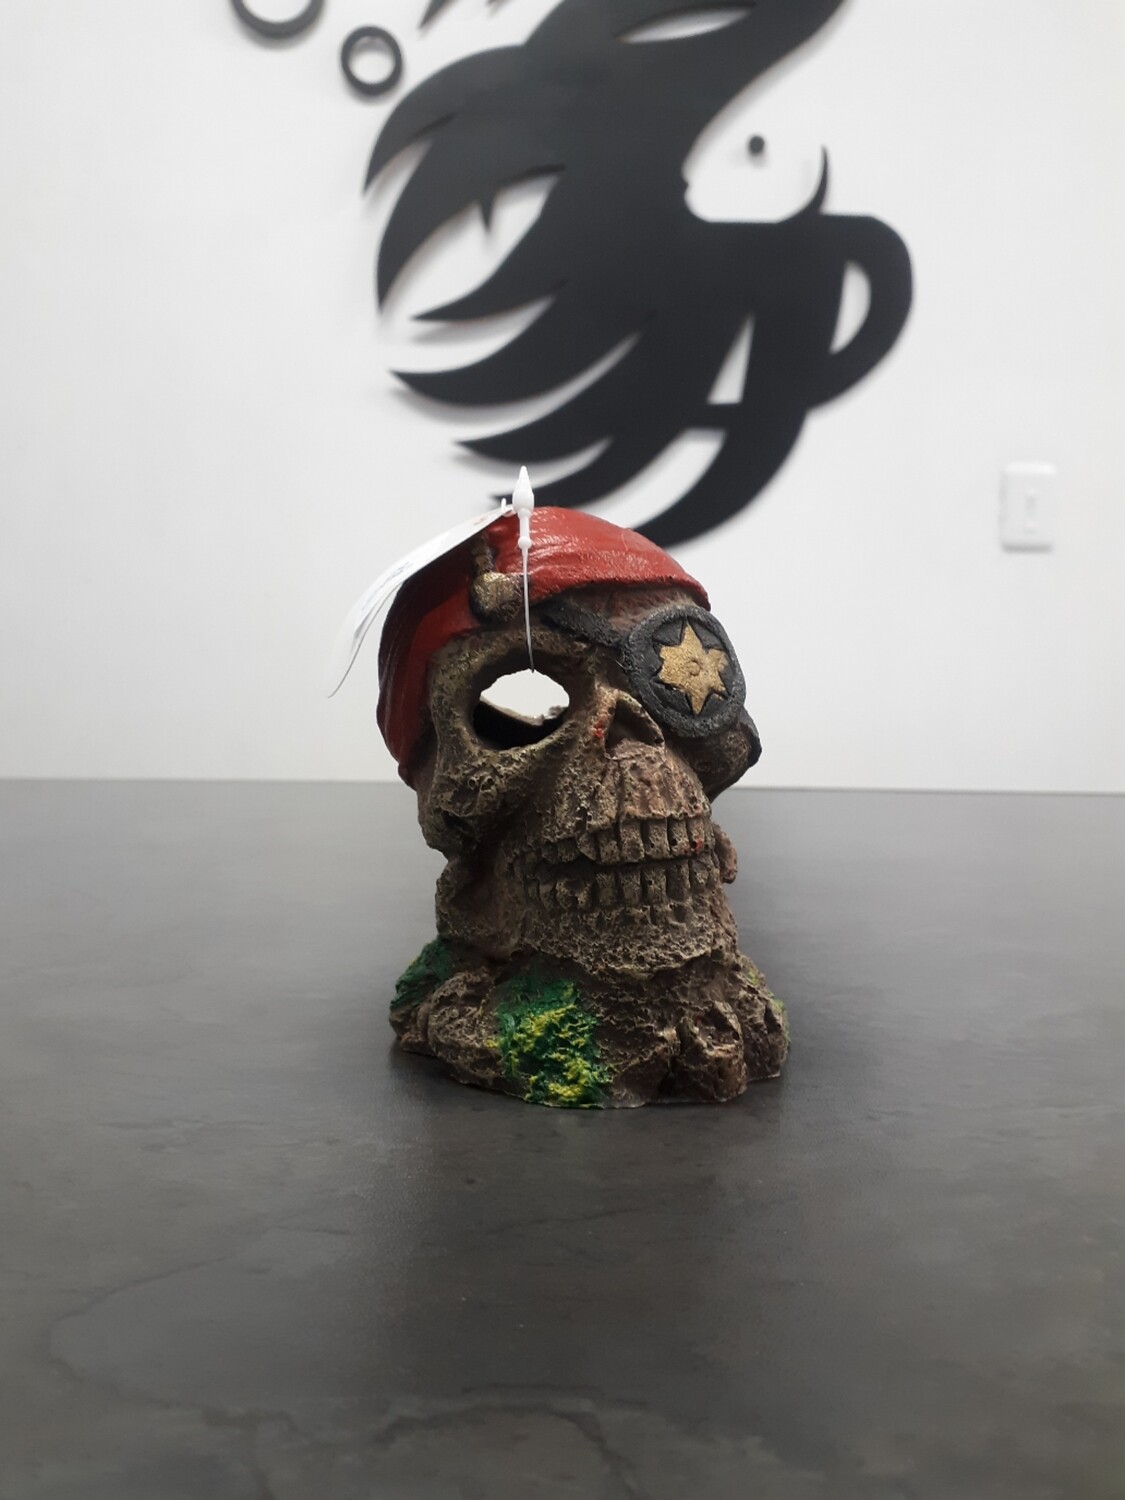 Pirate Skull Ornament